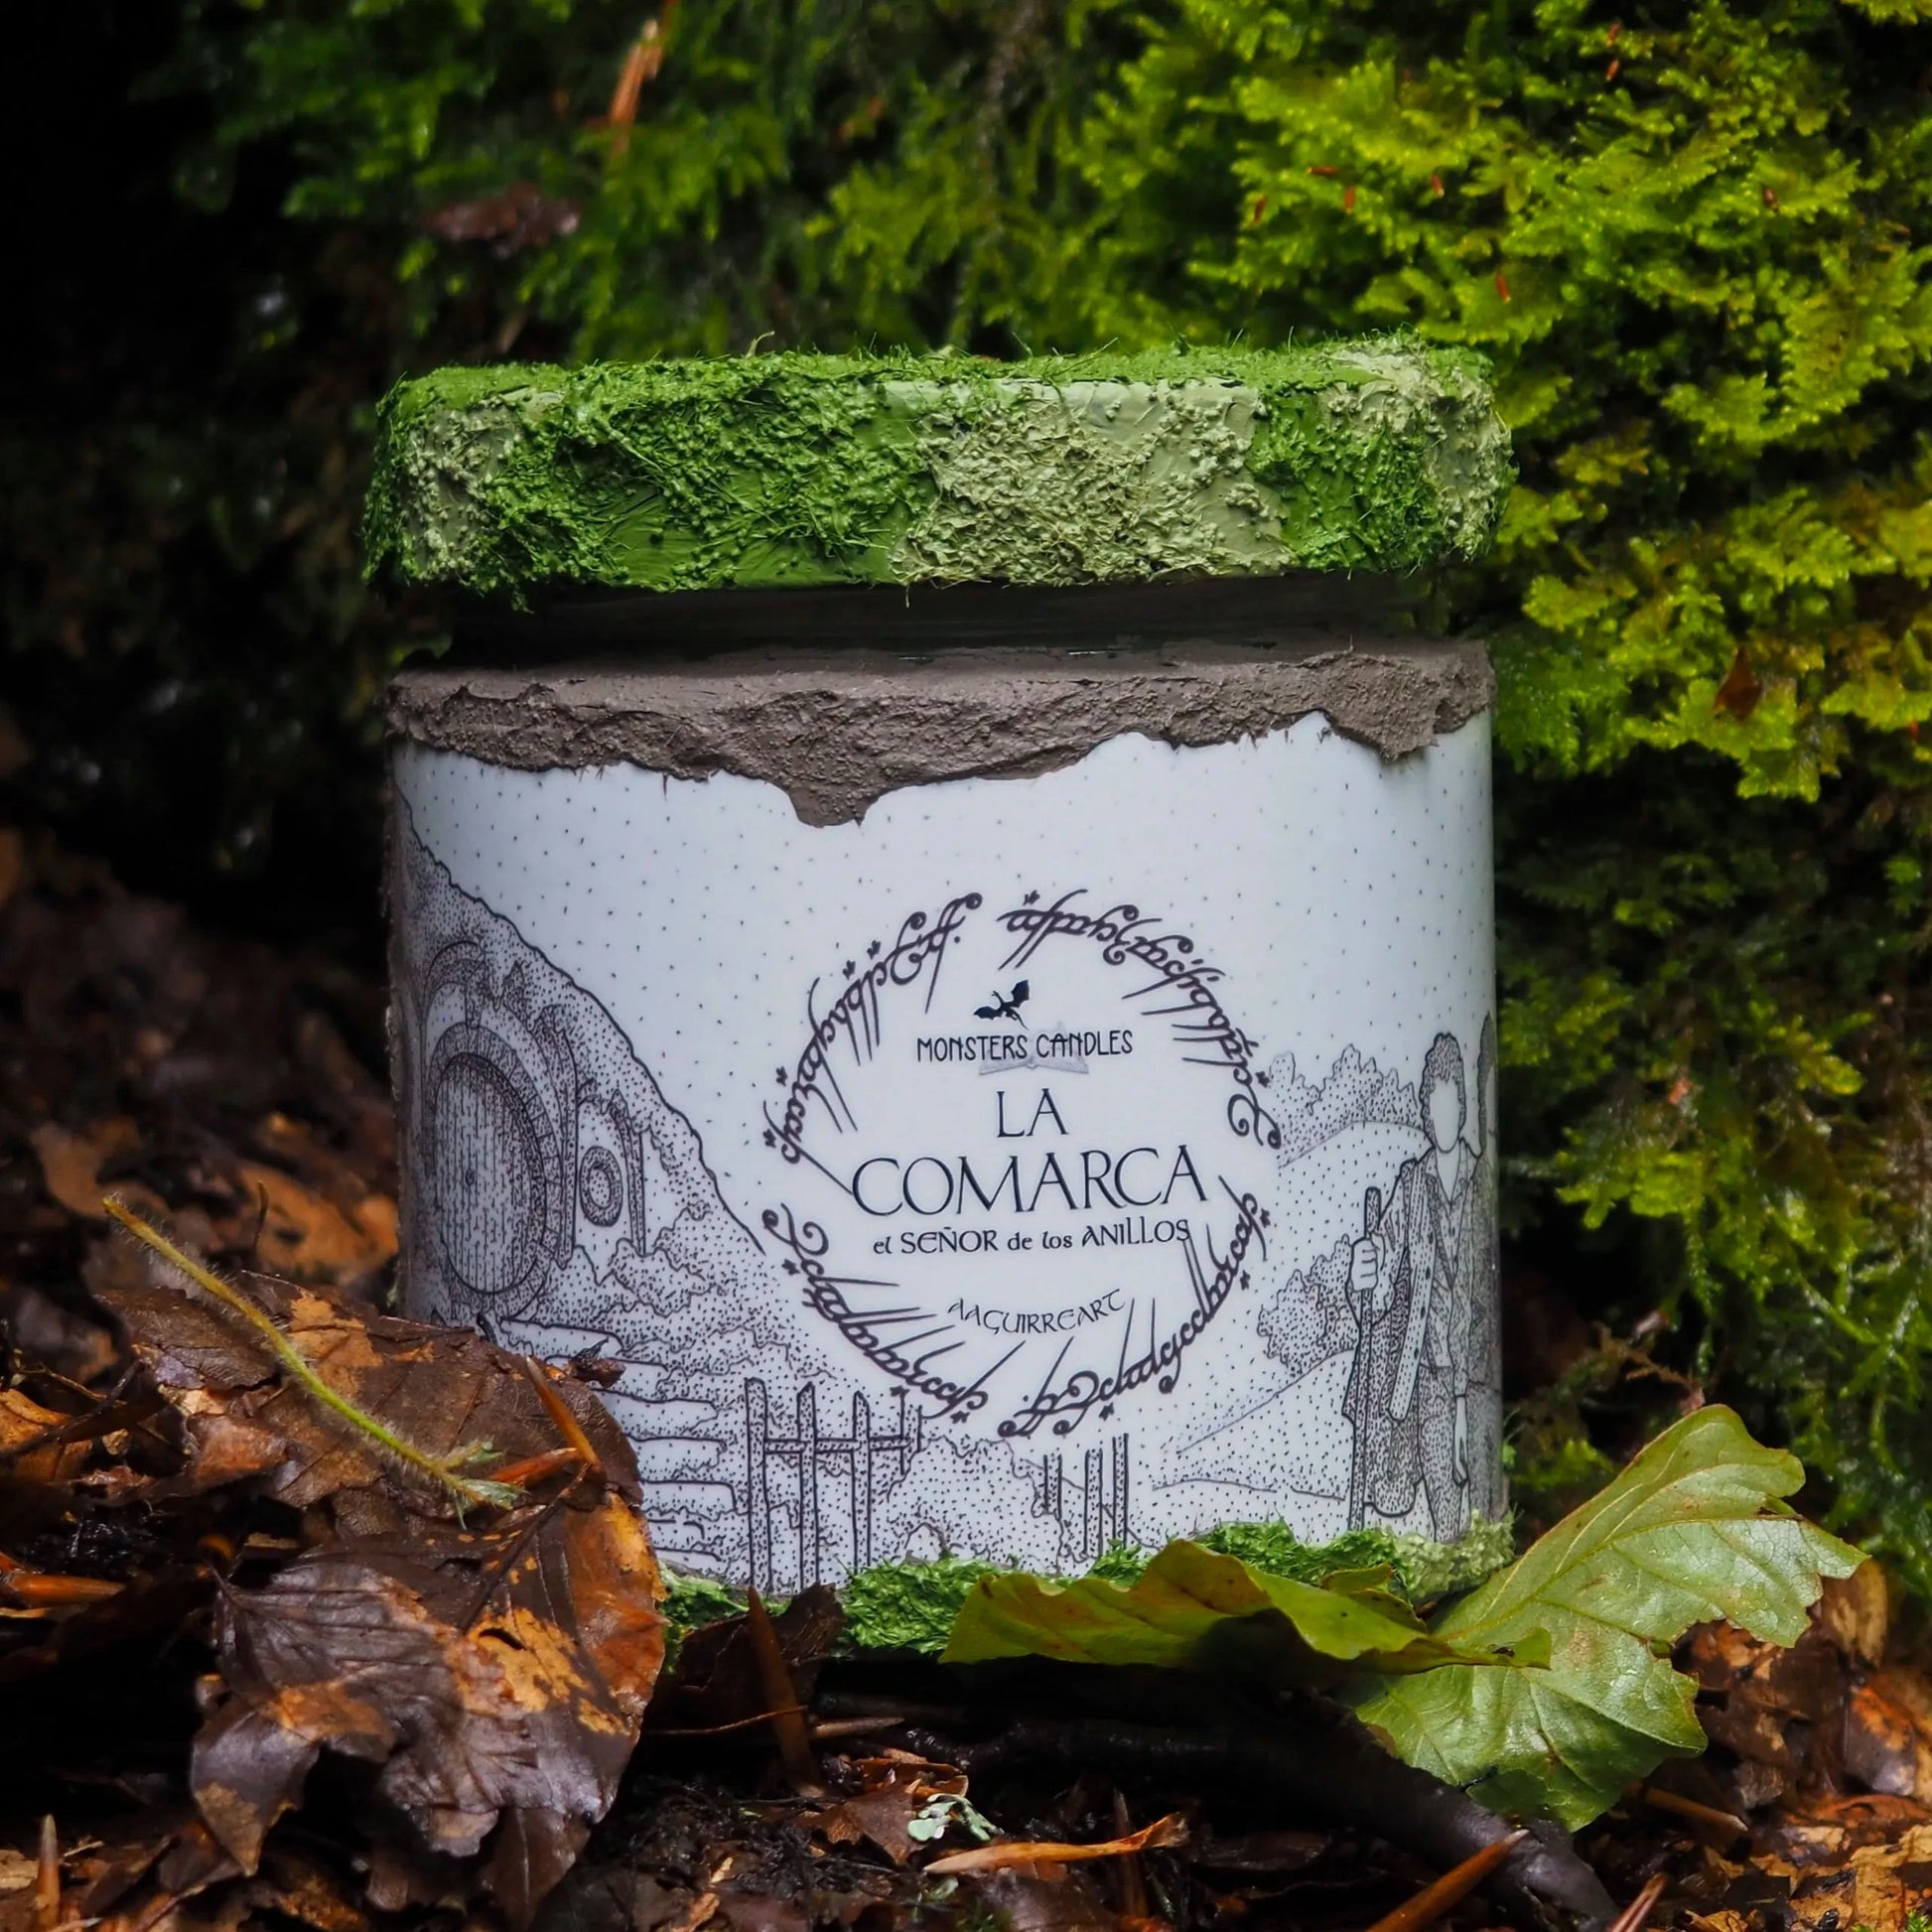 Vela "La Comarca" El Señor de los Anillos x @aaguirreart - Monsters Candles ® - Velas Literarias artesanas de soja 100% ecológica